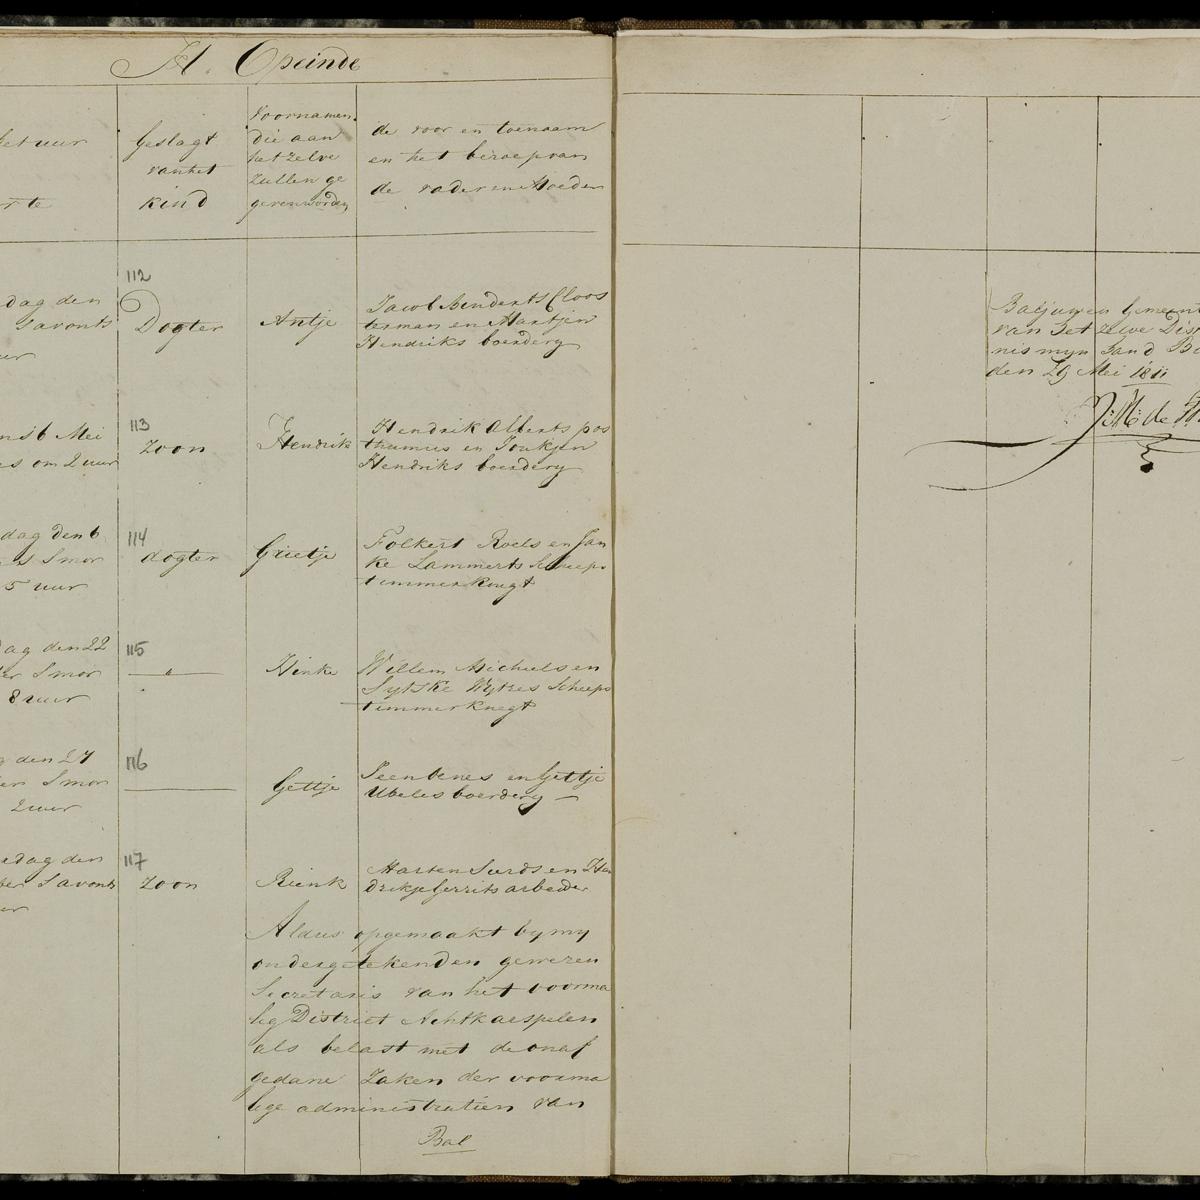 Civil registry of births, Achtkarspelen, 1811, records 112-117